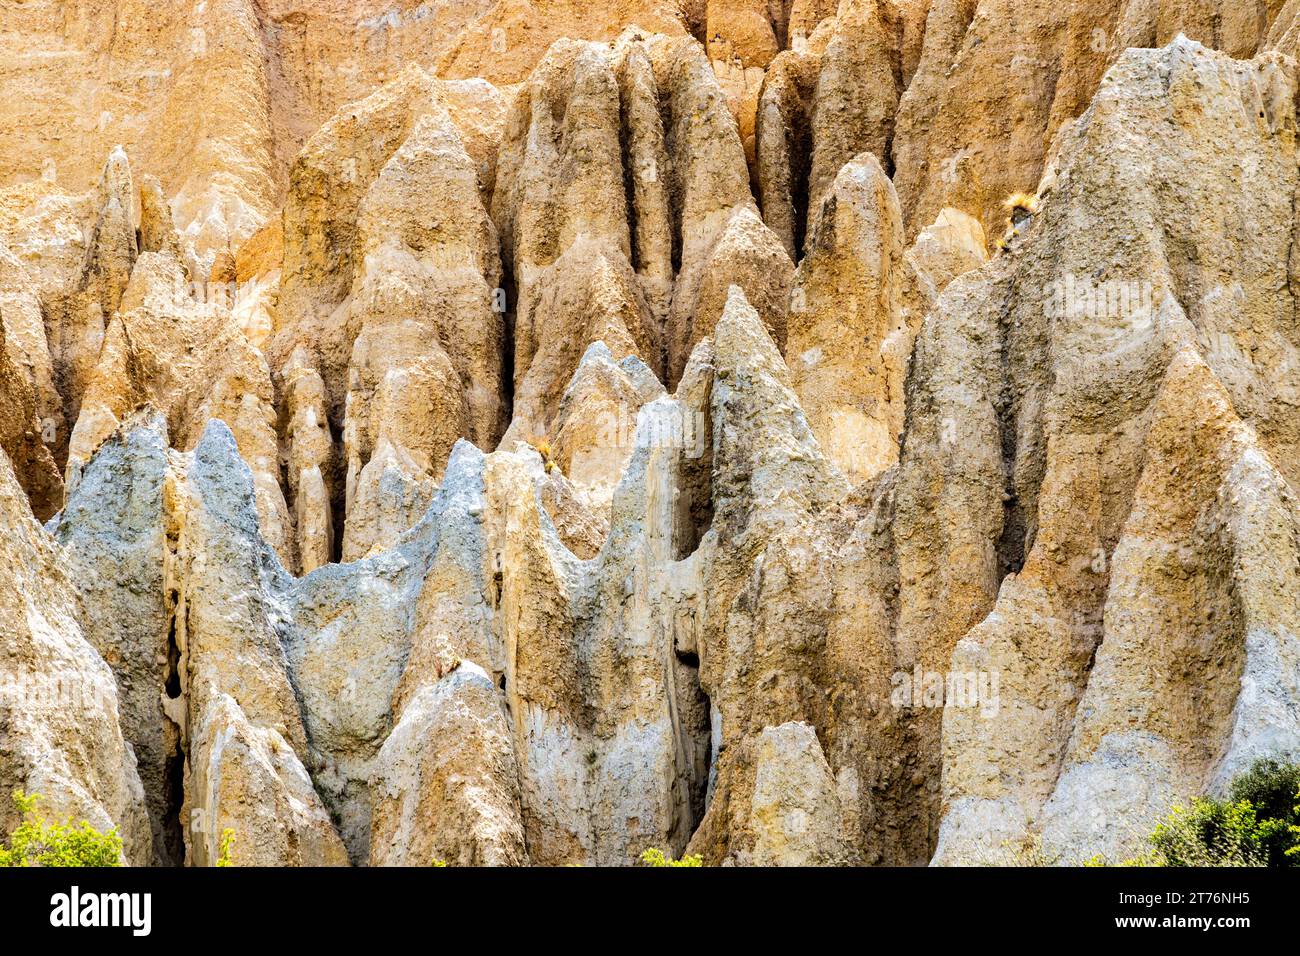 Le Clay Cliffs di Omarama si sono formate nel corso di milioni di anni dall'erosione naturale e dalla sedimentazione. Si trova nell'isola sud della nuova Zelanda nella zona di Waitaki. Foto Stock